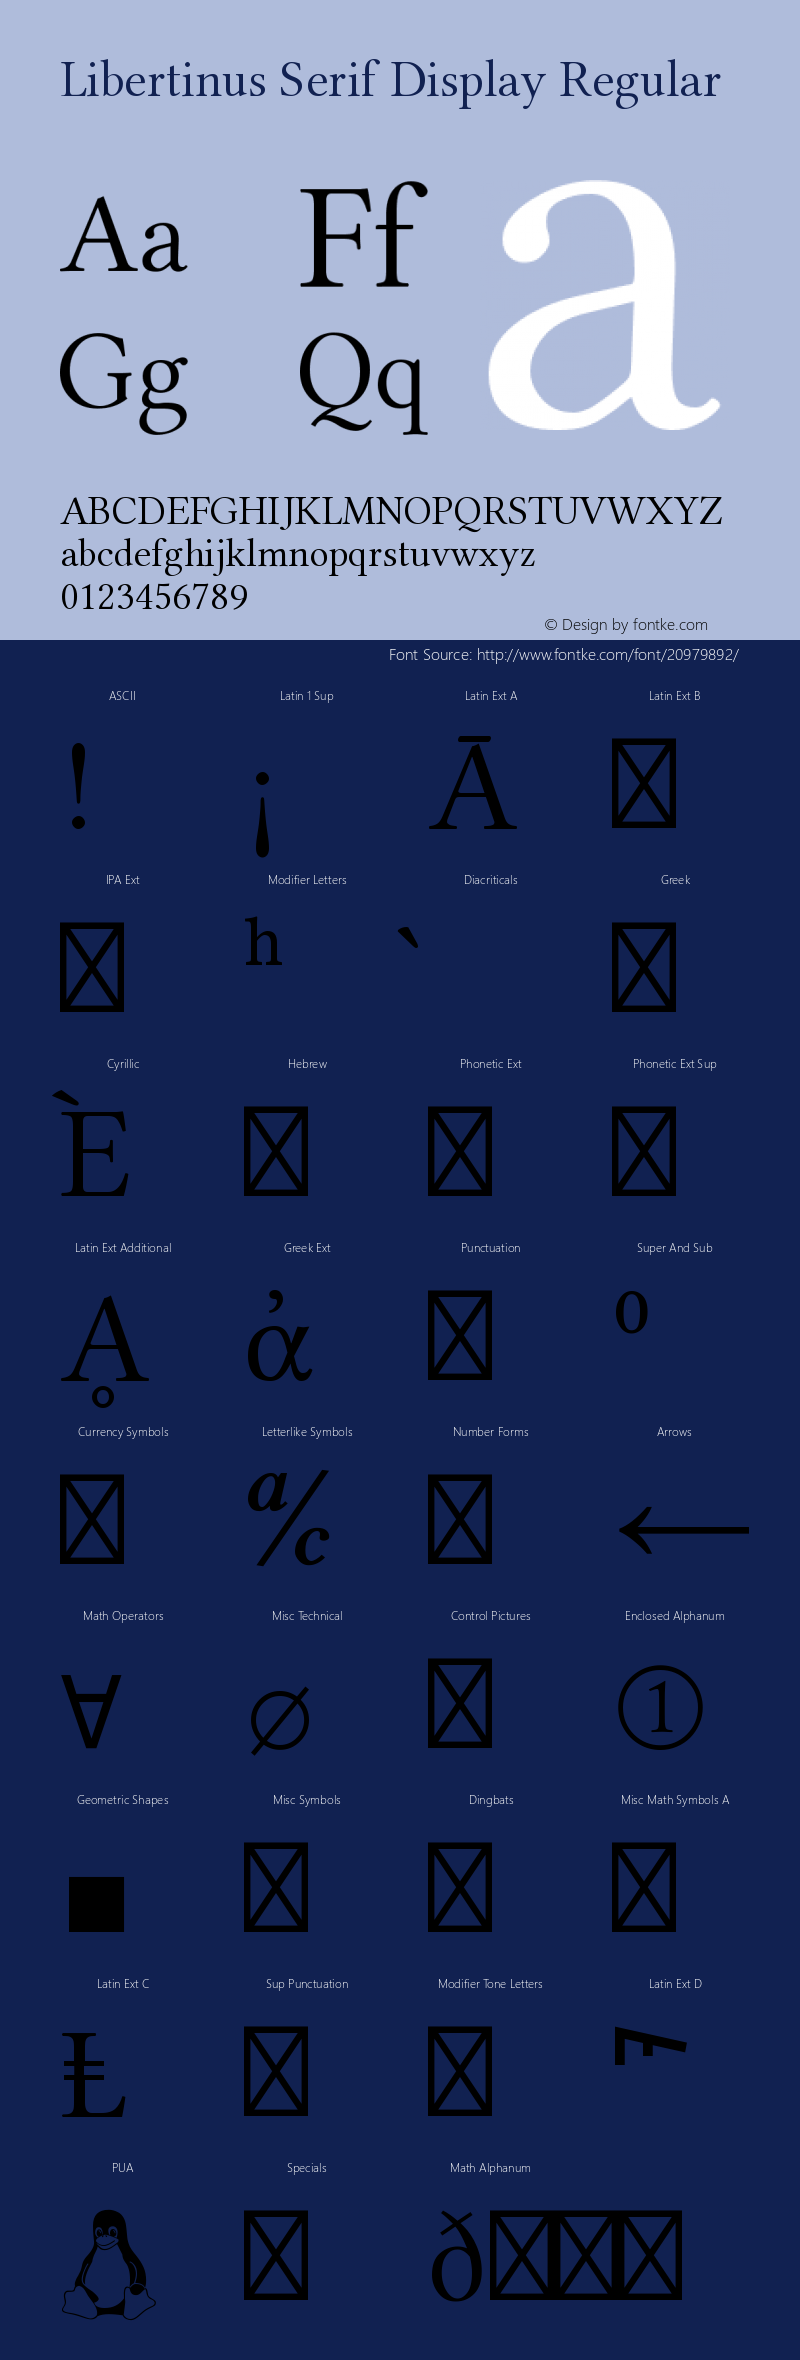 Libertinus Serif Display Version 5.1.3 Font Sample